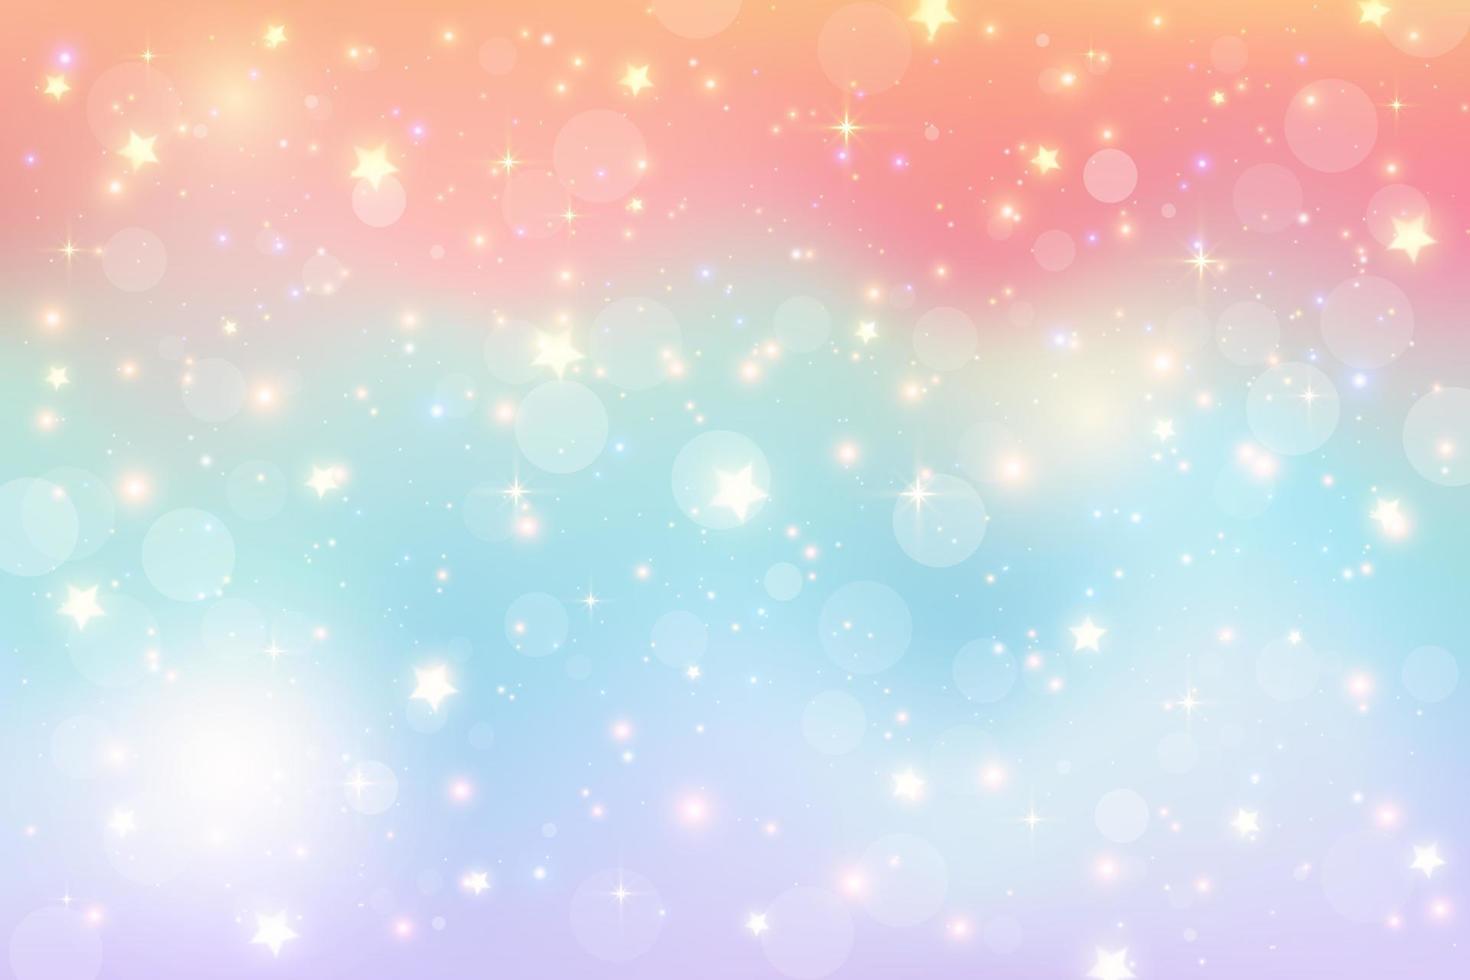 ilustração em aquarela de fantasia com céu pastel de arco-íris com estrelas. pano de fundo cósmico de unicórnio abstrato. ilustração vetorial de garota dos desenhos animados vetor